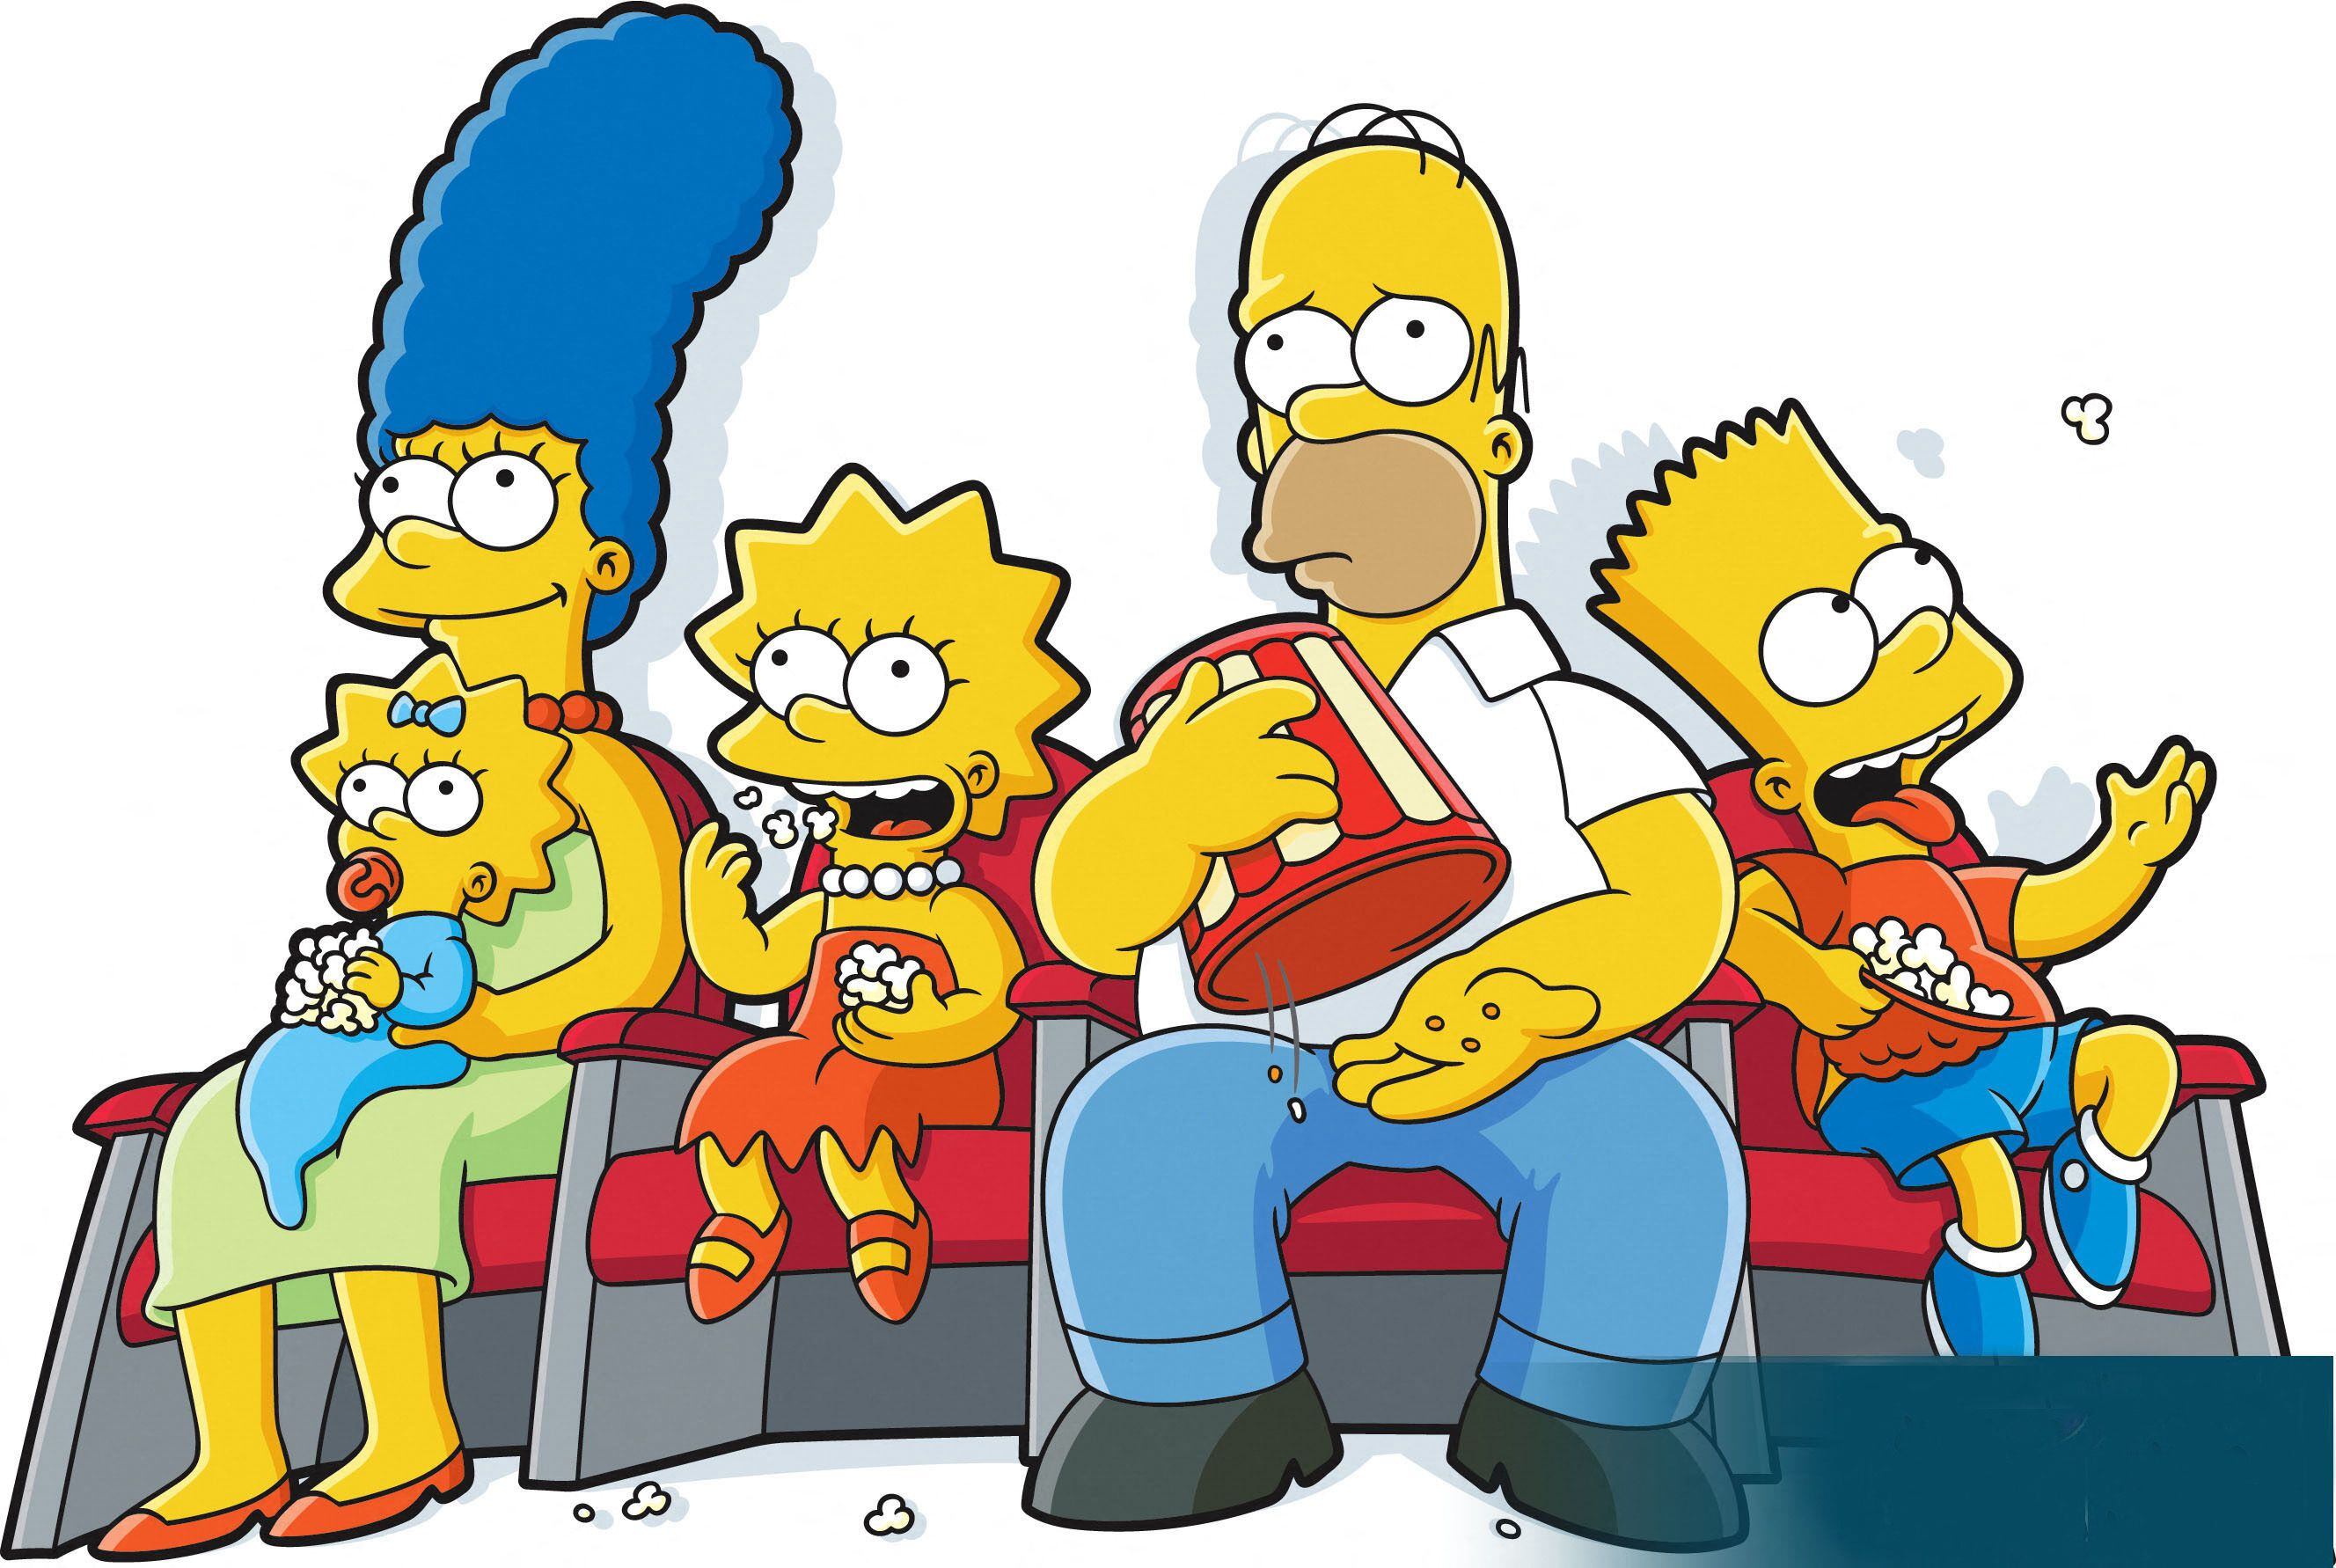 Los Simpson, según AL JEAN.